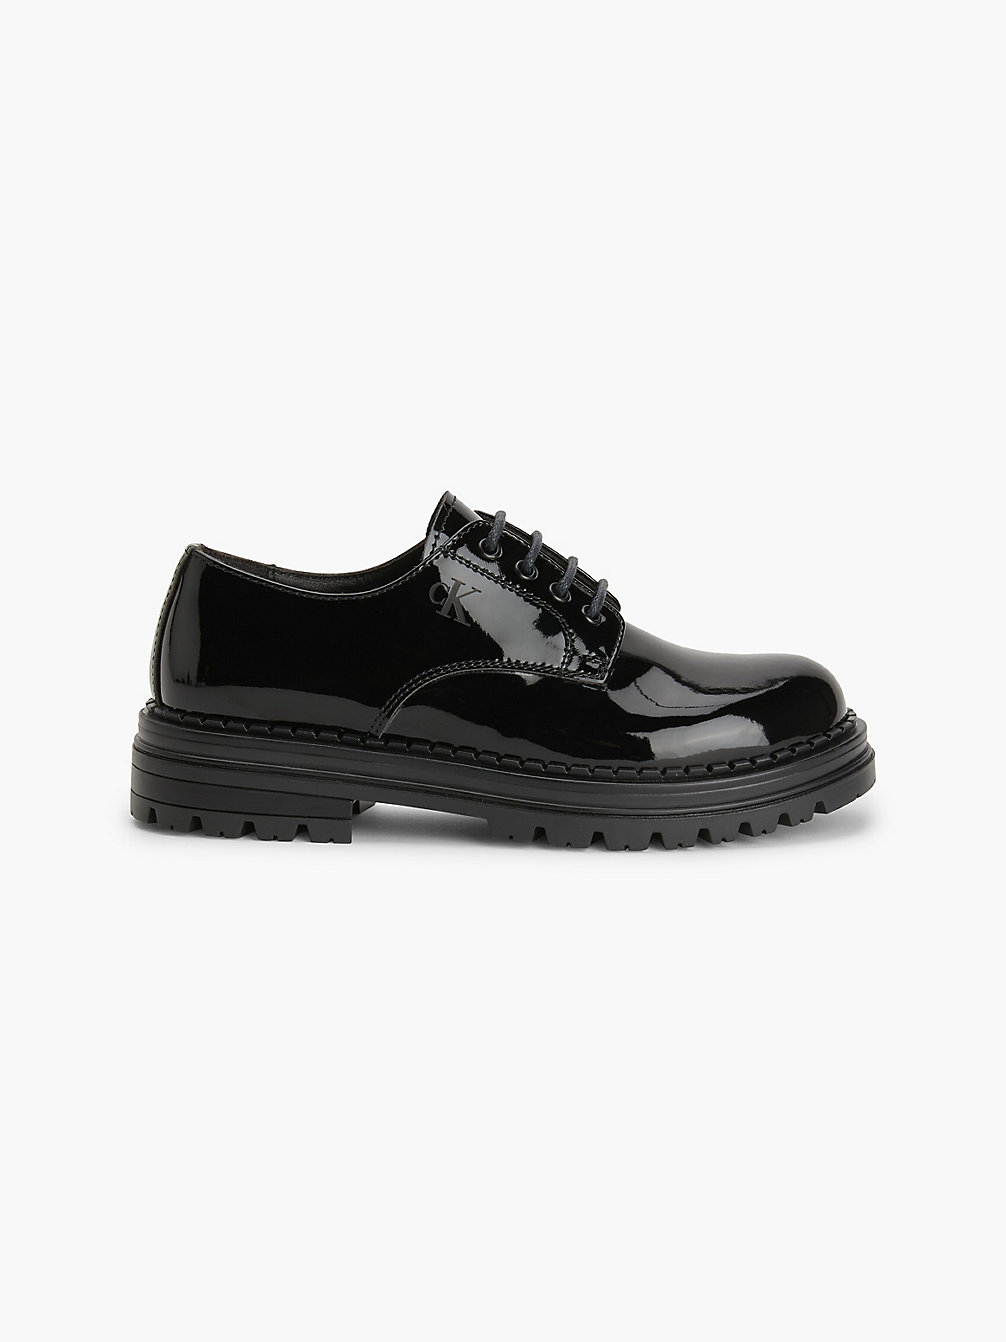 Zapatos De Piel Acharolada Sintética Con Cordones Para Niños > BLACK > undefined kids unisex > Calvin Klein